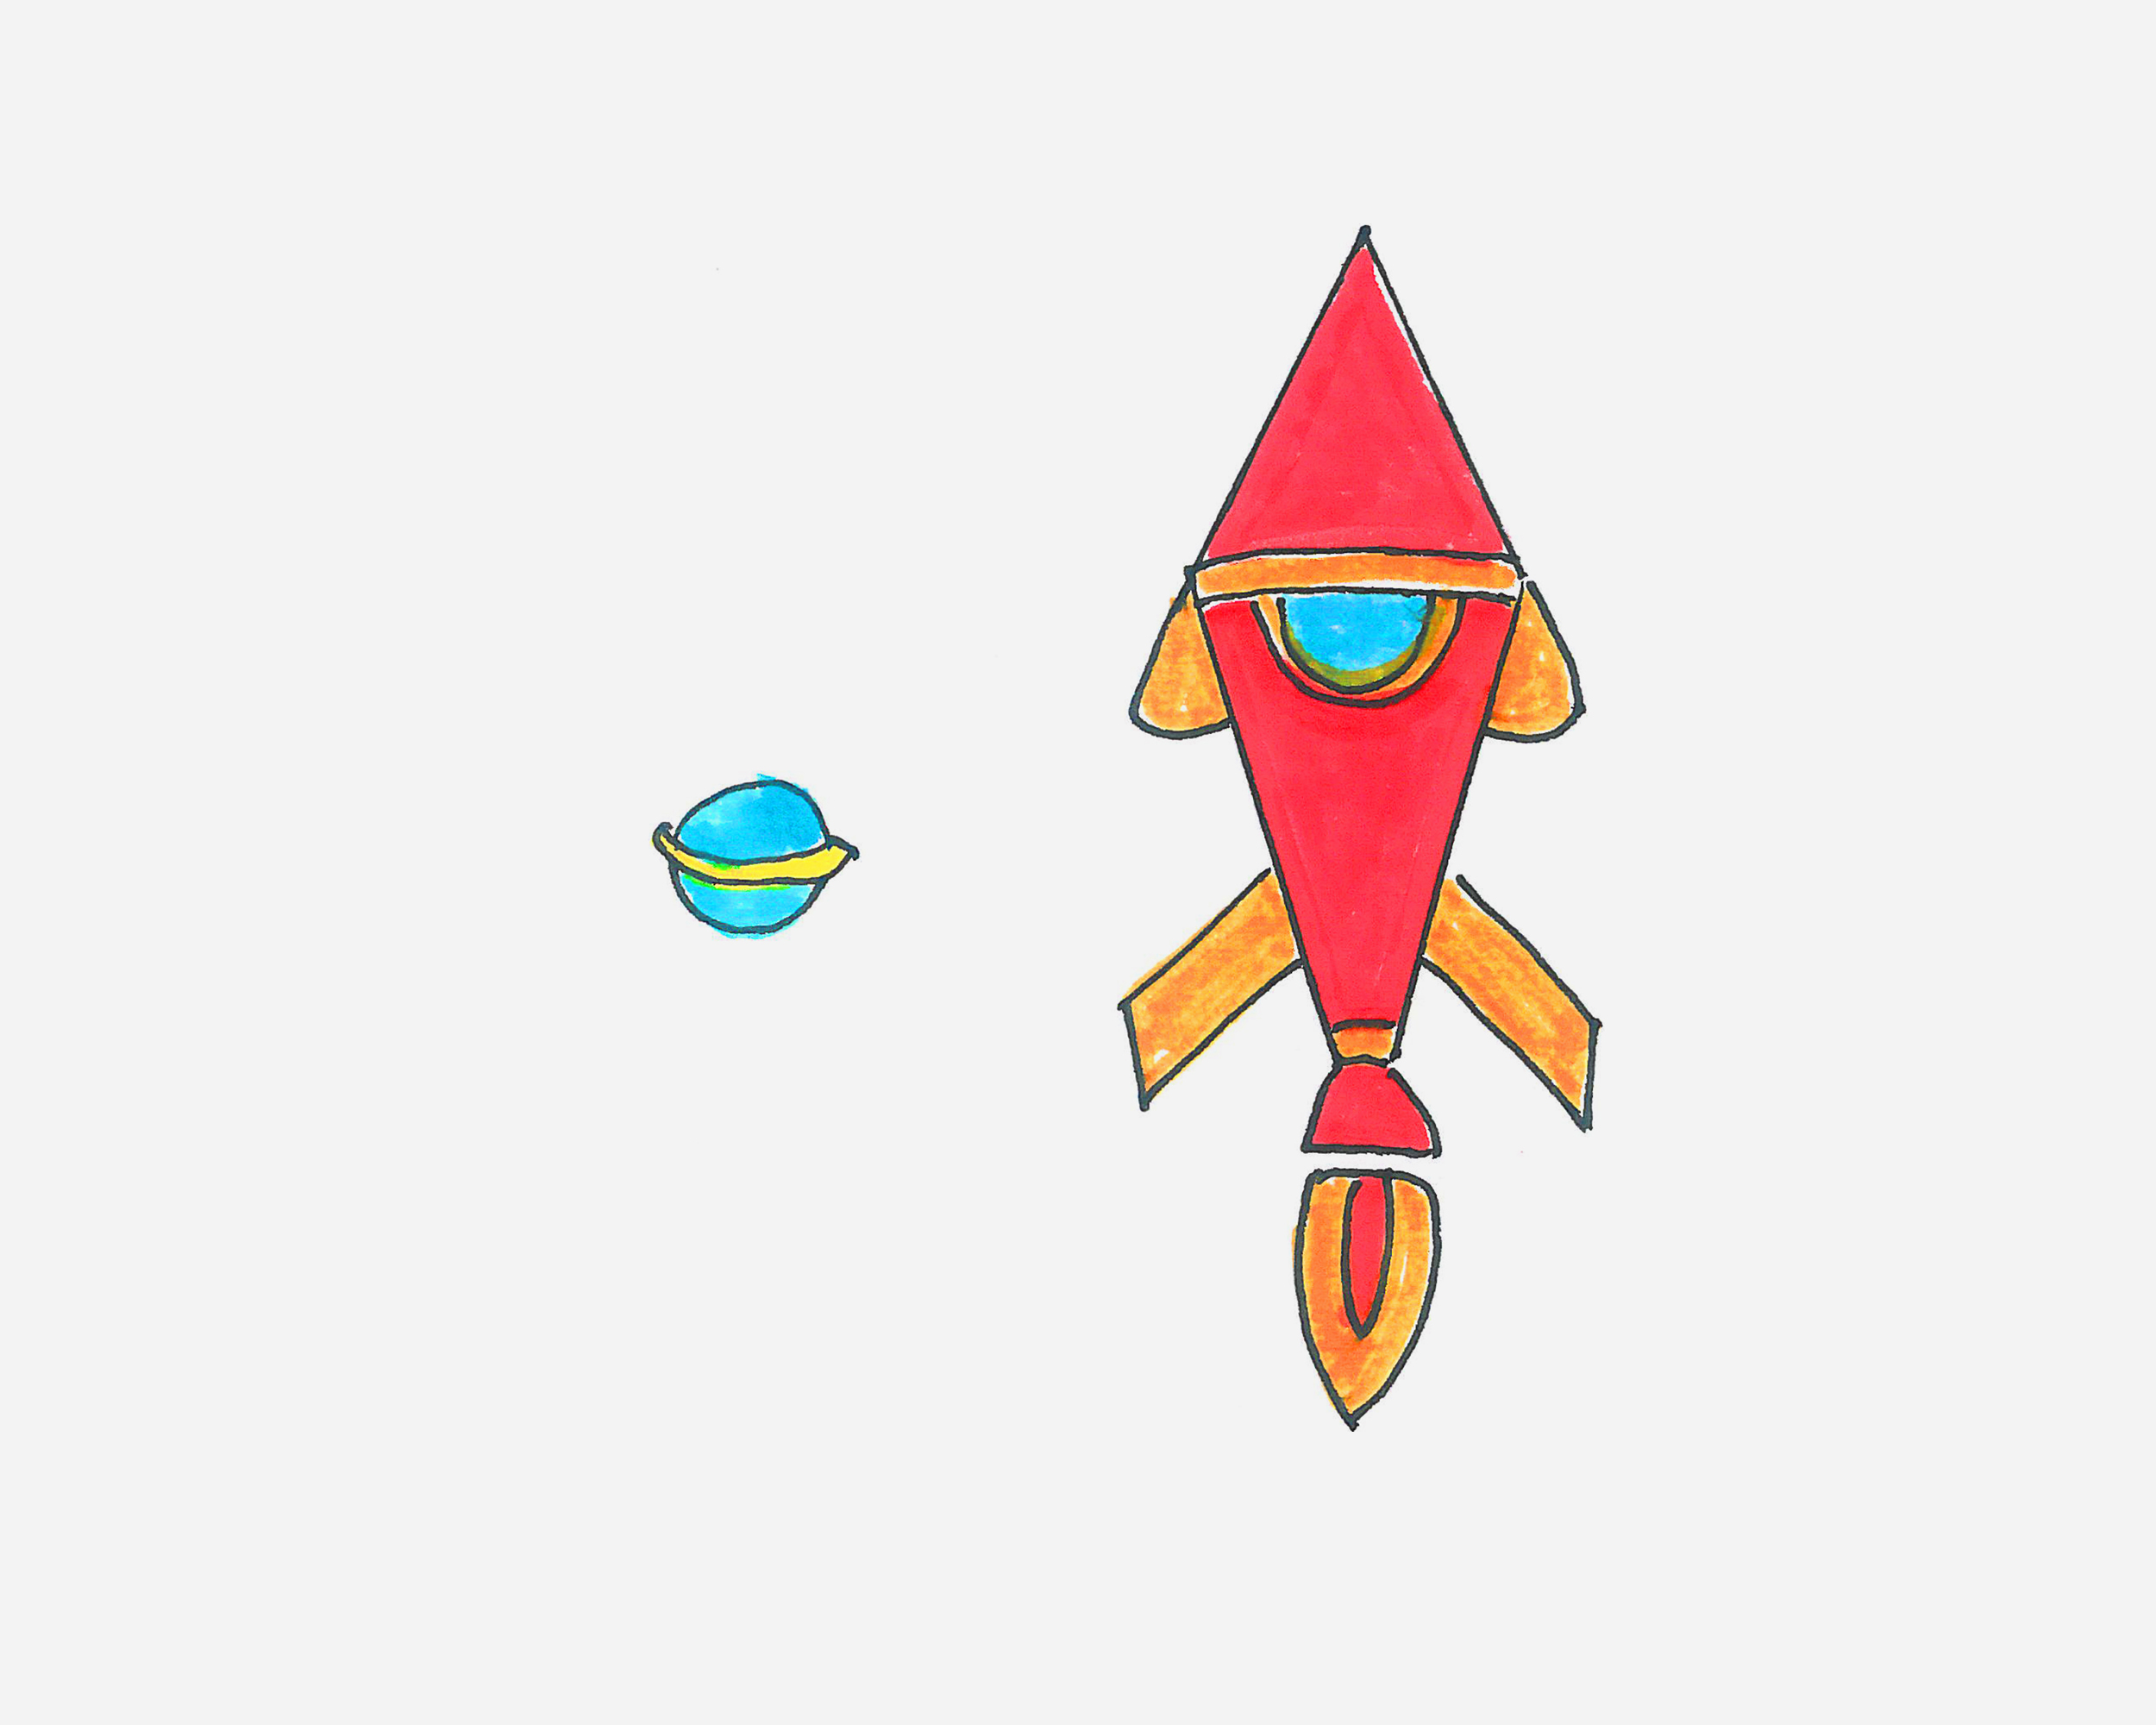 6-7岁儿童画作品 带颜色火箭的画法图解教程💛巧艺网